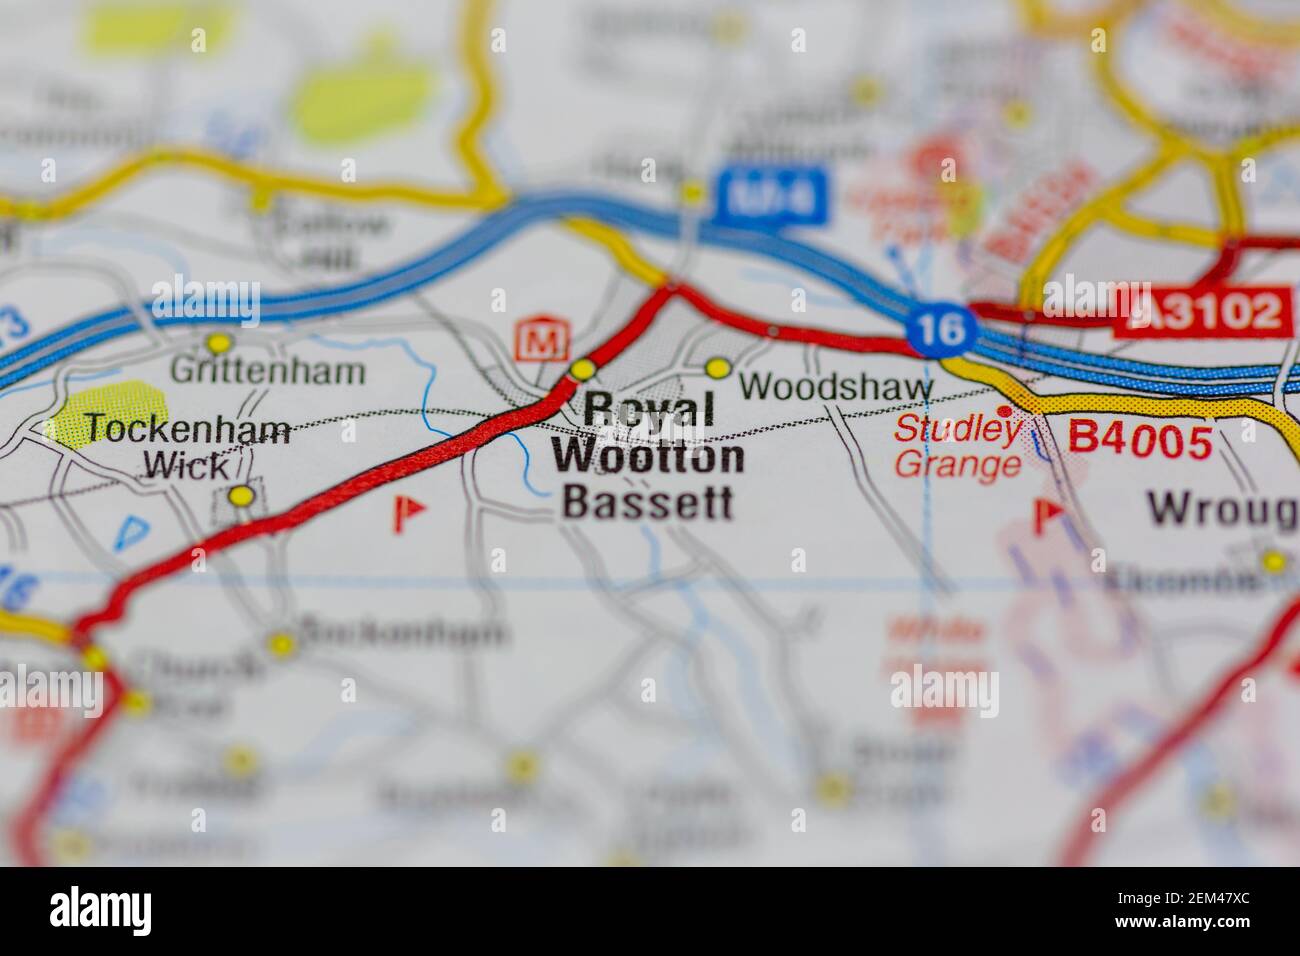 Royal Wootton Bassett mostrato su una mappa stradale o geografia mappa Foto Stock